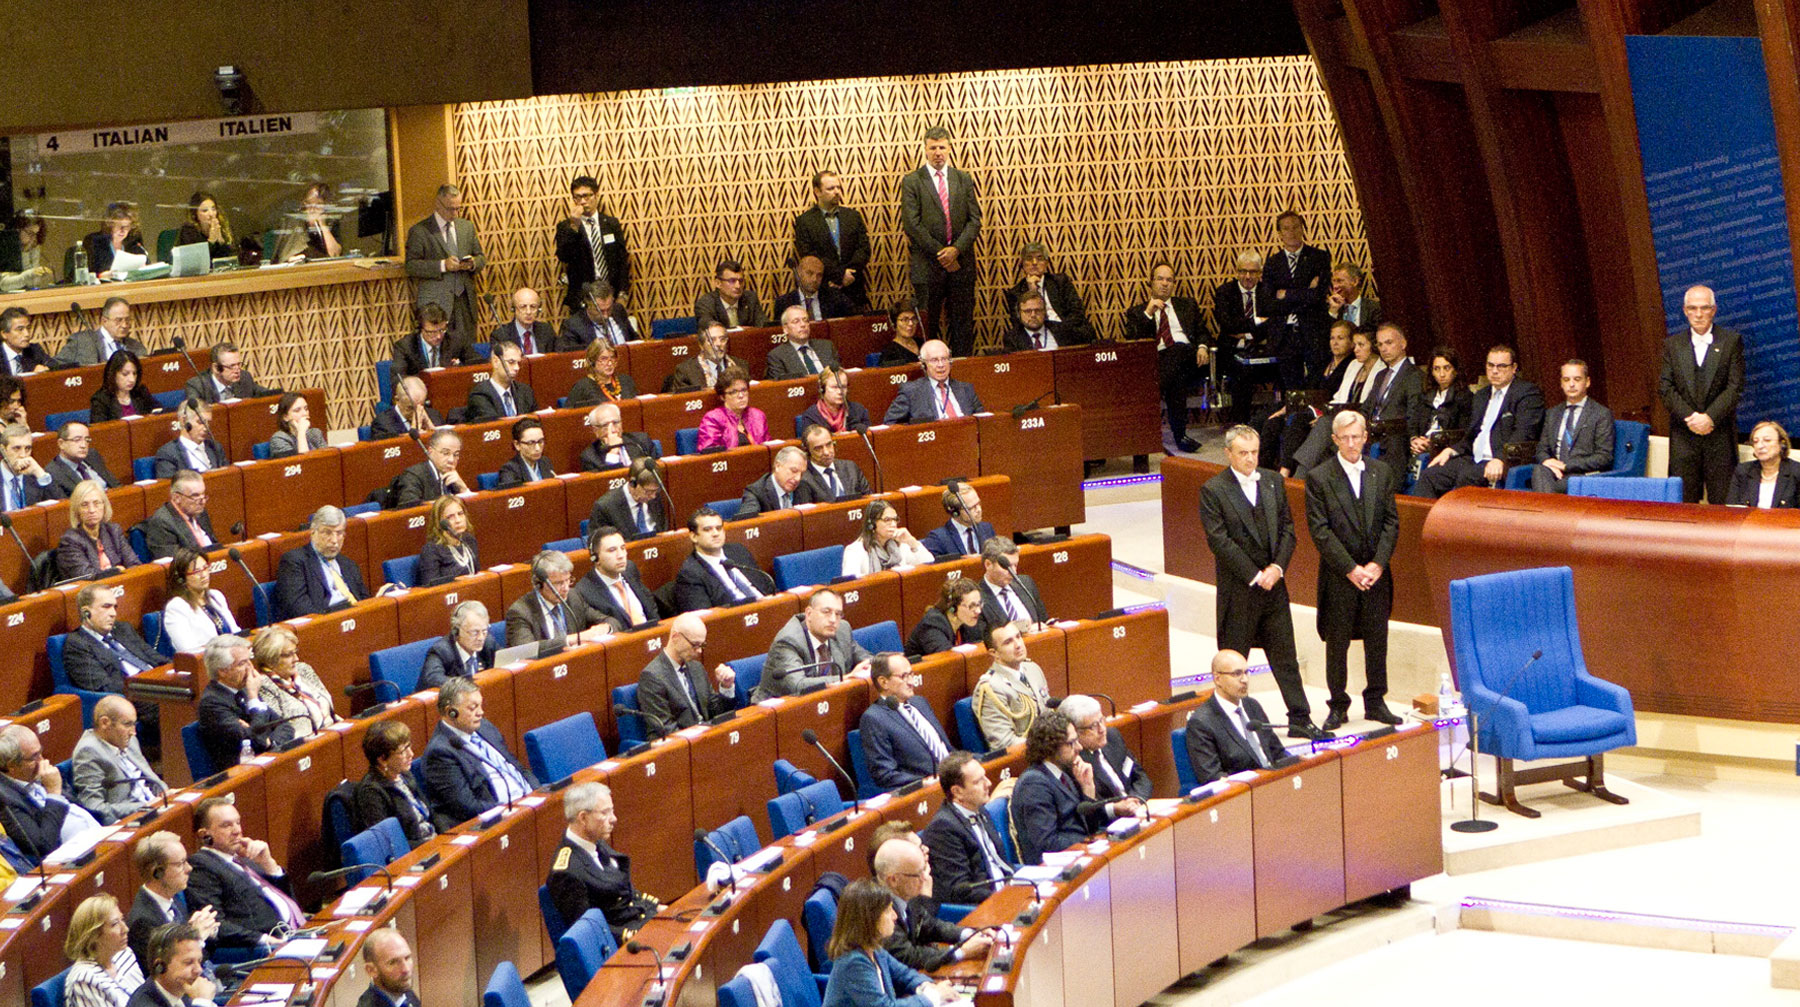 Предложение Володина вернуть 10 миллиардов рублей взносов юридически невыполнимо, заявили в Страсбурге Парламентская ассамблея Совета Европы (ПАСЕ)